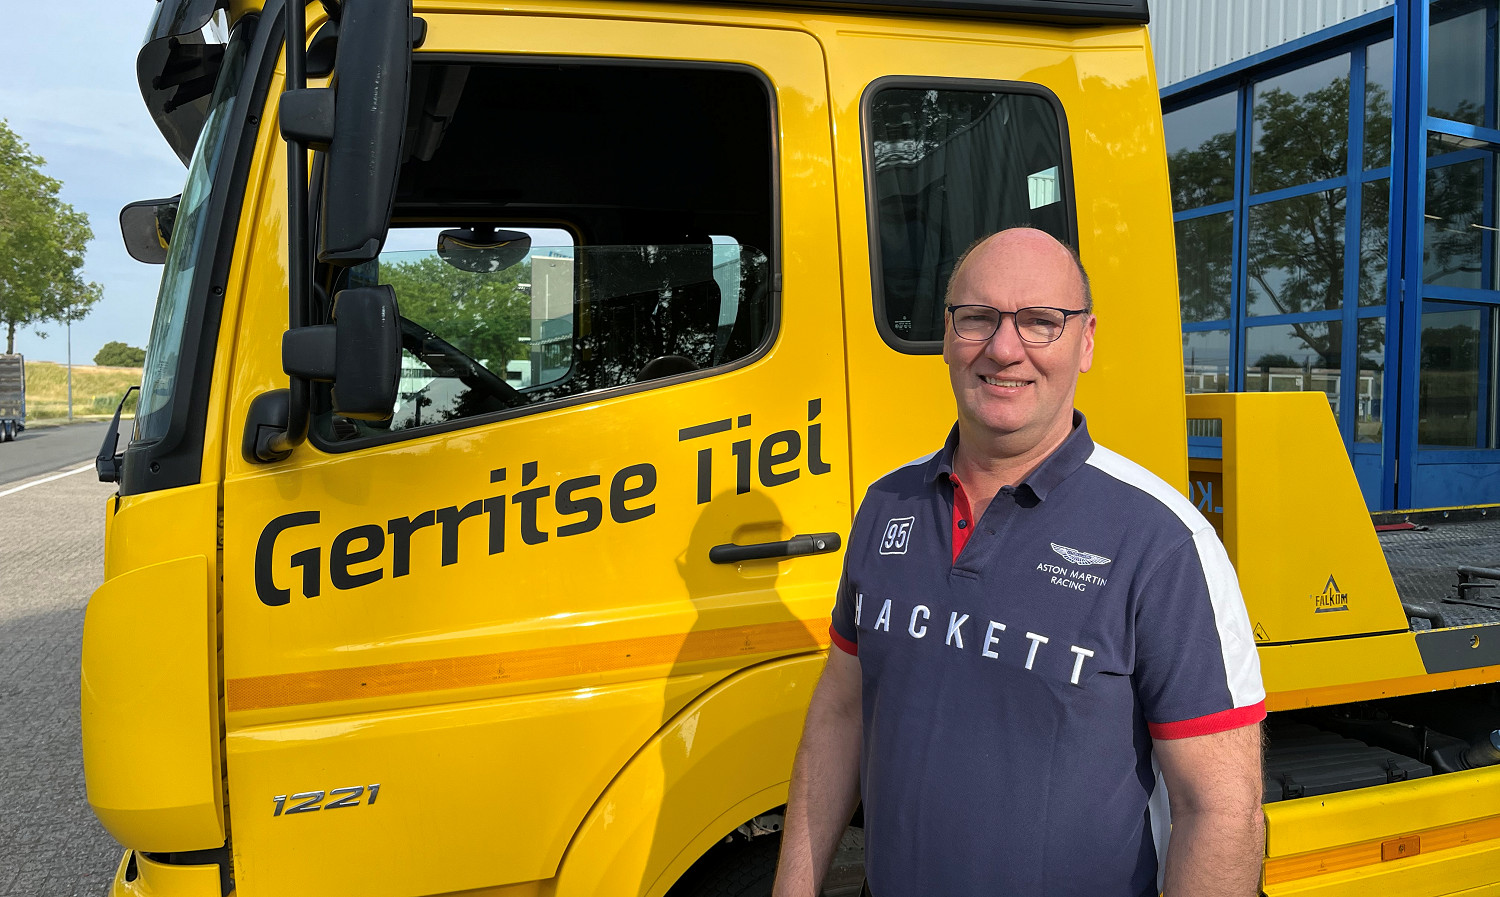 Marcel Gerritse of M.C. Gerritse Bedrijfswagens, IM recovery operator in contract period 2023-2026